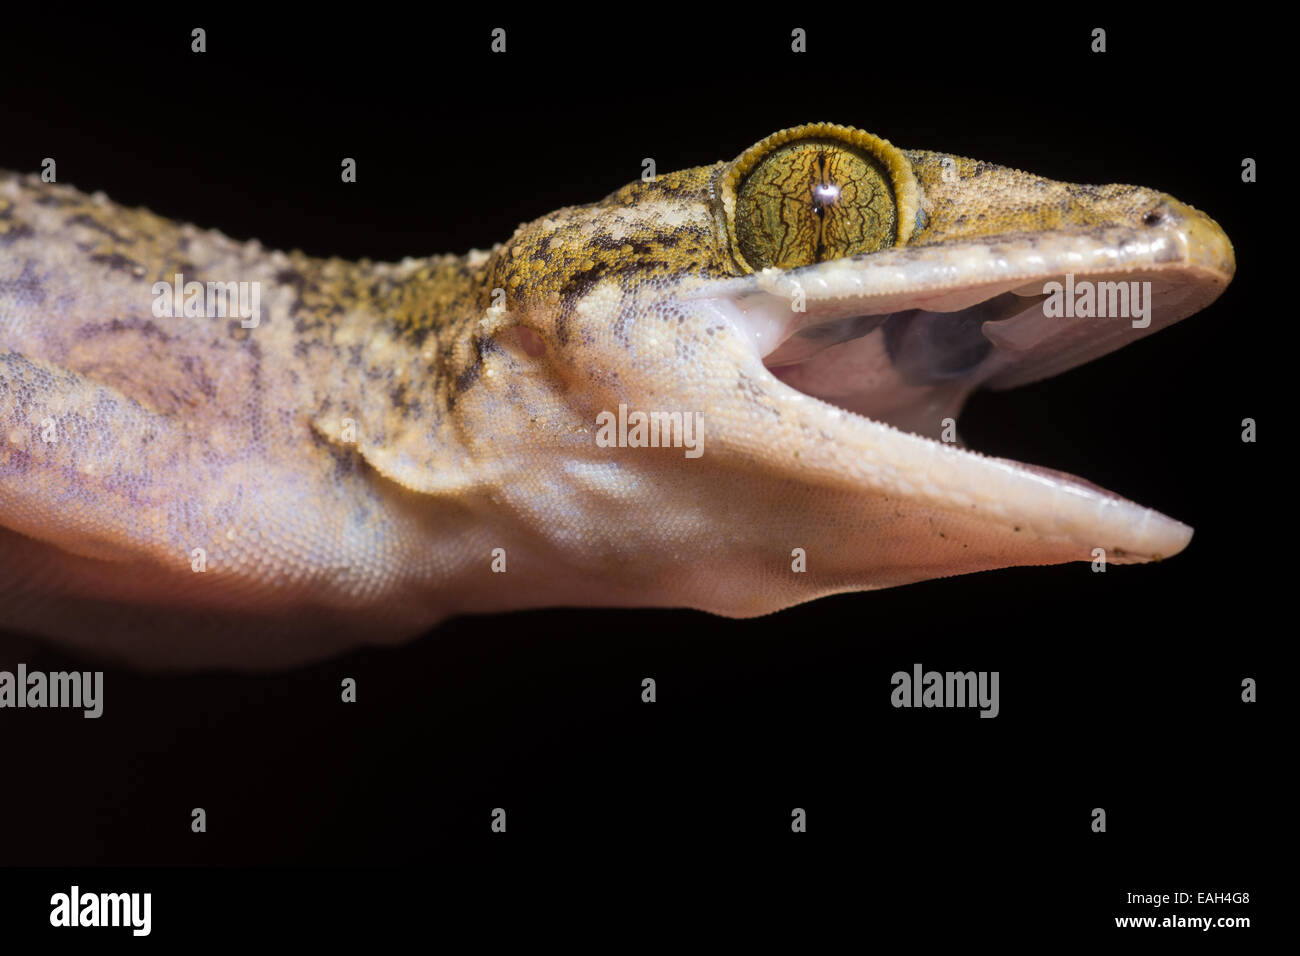 Ein Yoshi Bogen-fingriger Gecko (Cyrtodactylus Yoshii) versucht, so abschreckend wie möglich auszusehen. Stockfoto